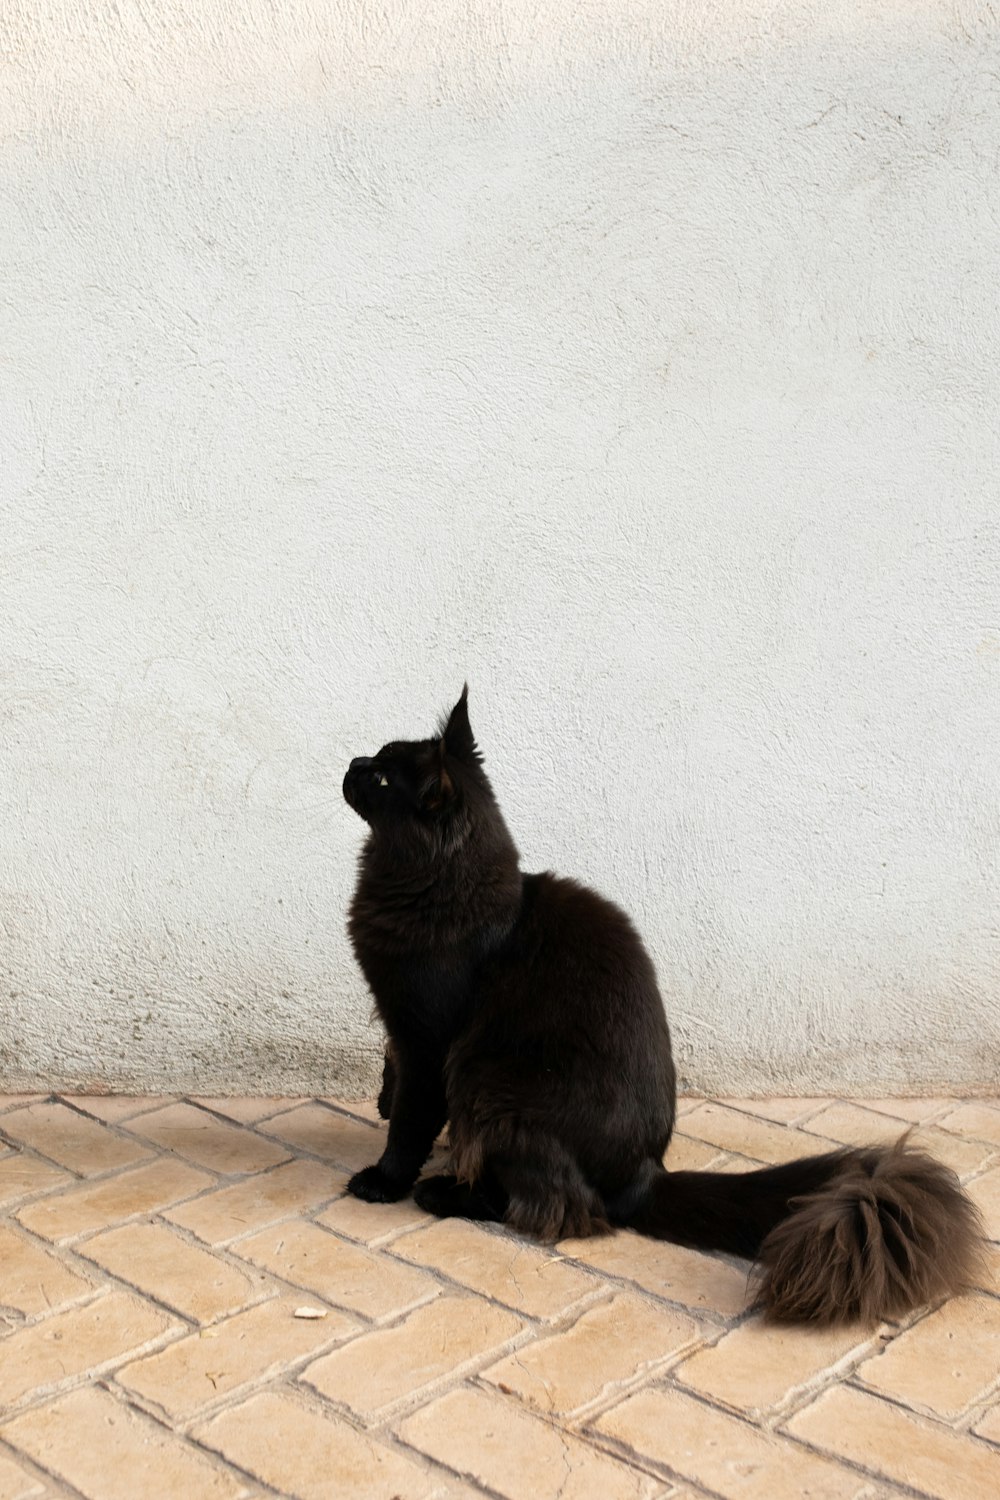 タイル張りの床に座っている黒猫